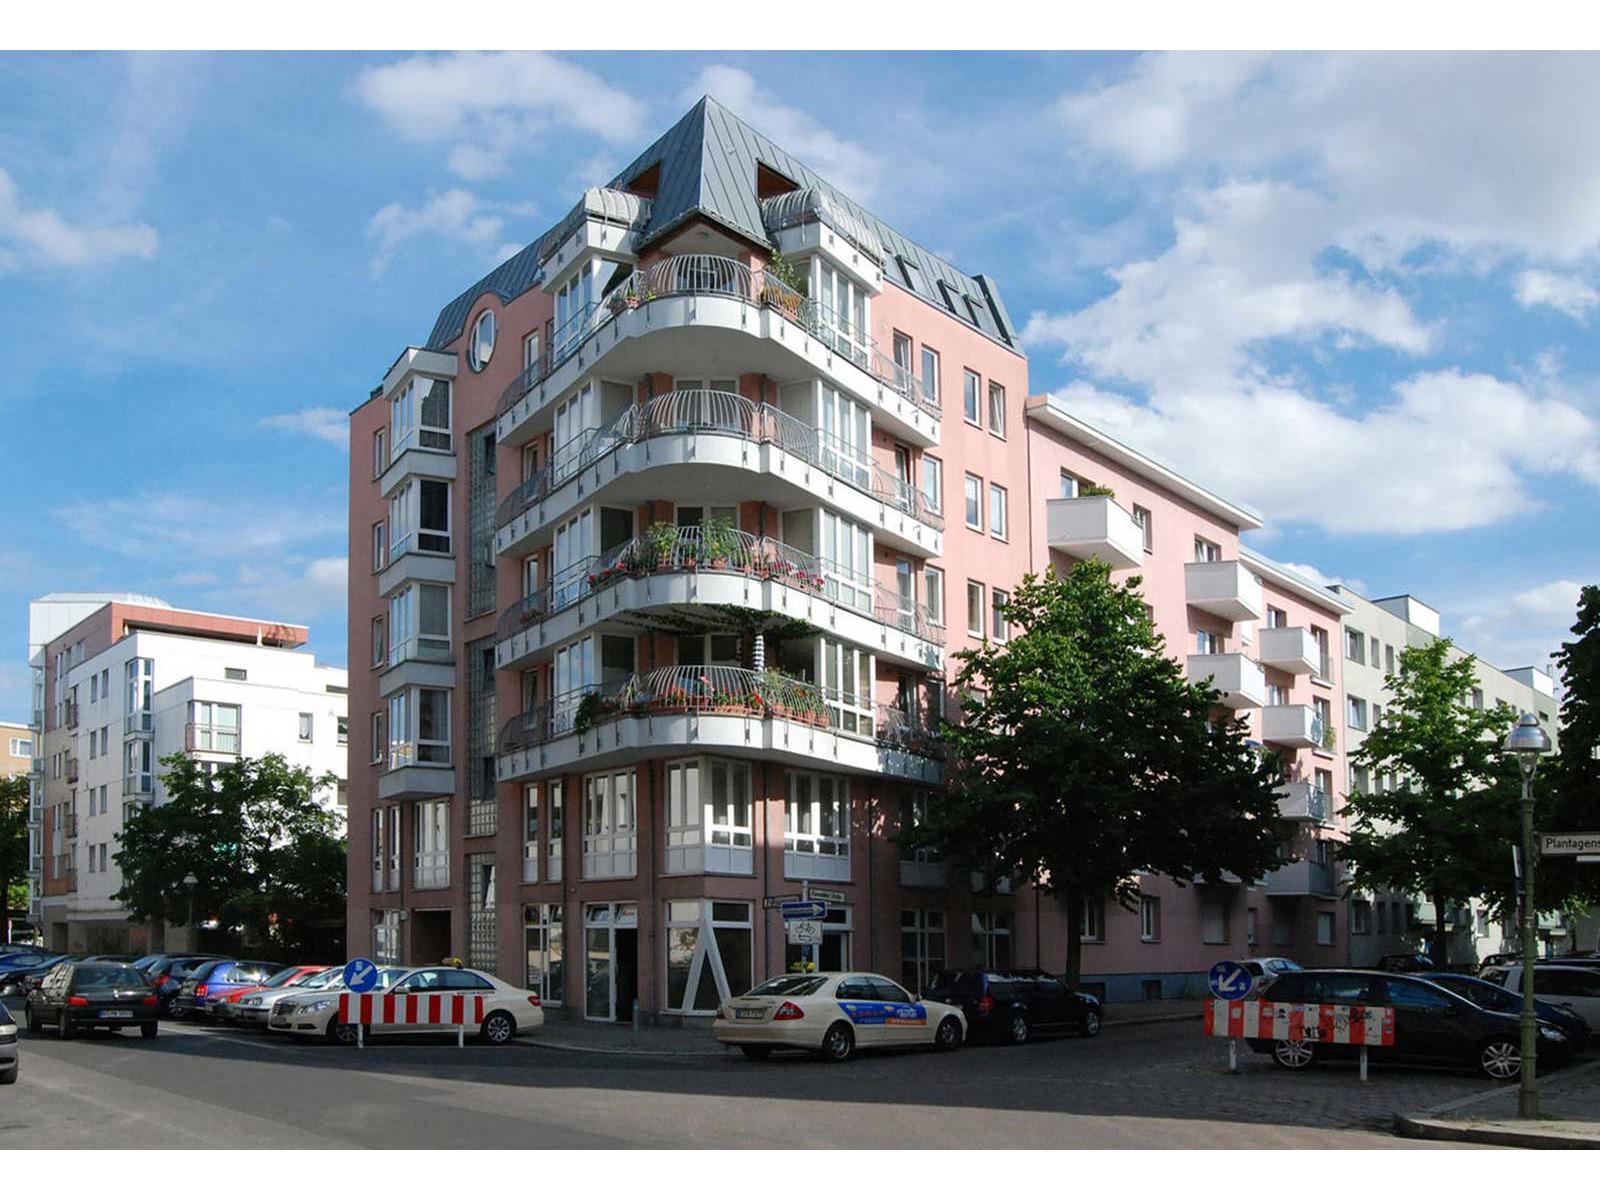 Bendzko Immobilien Vermittlungs GmbH, Kurfürstendamm 16 in Berlin